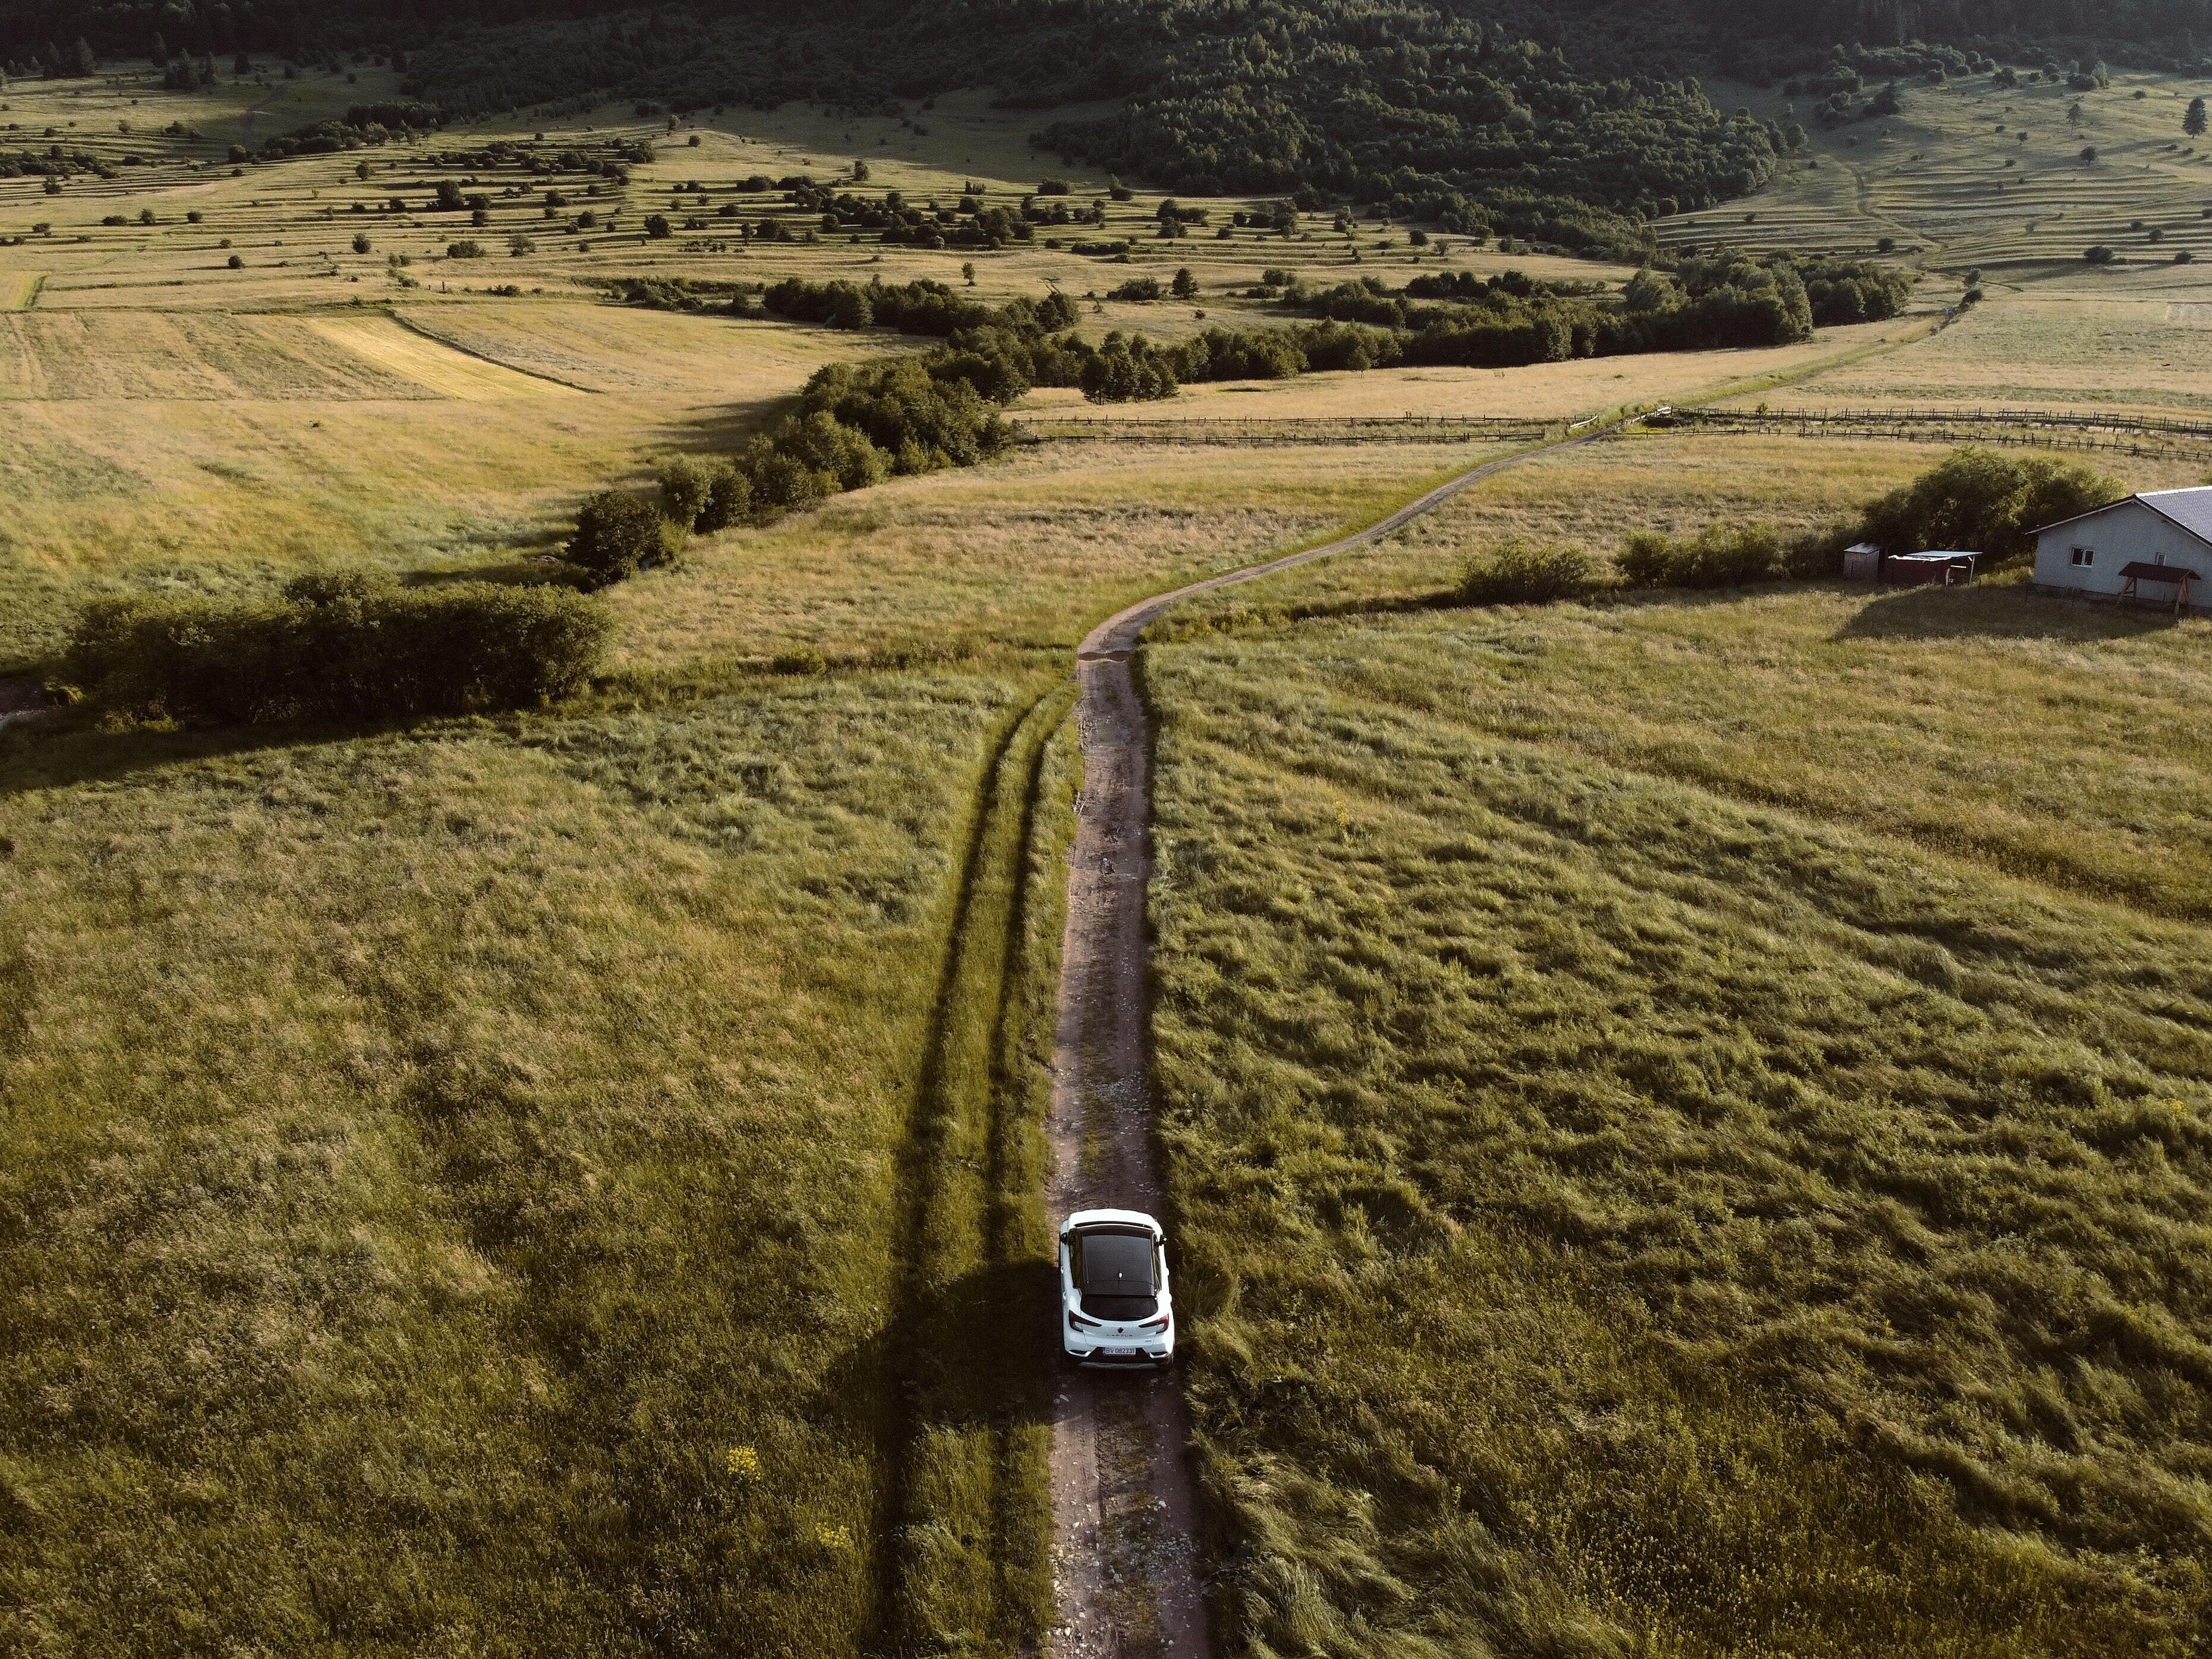 Una toma real de un coche eléctrico circulando por un camino todoterreno en medio de un paisaje exuberante.